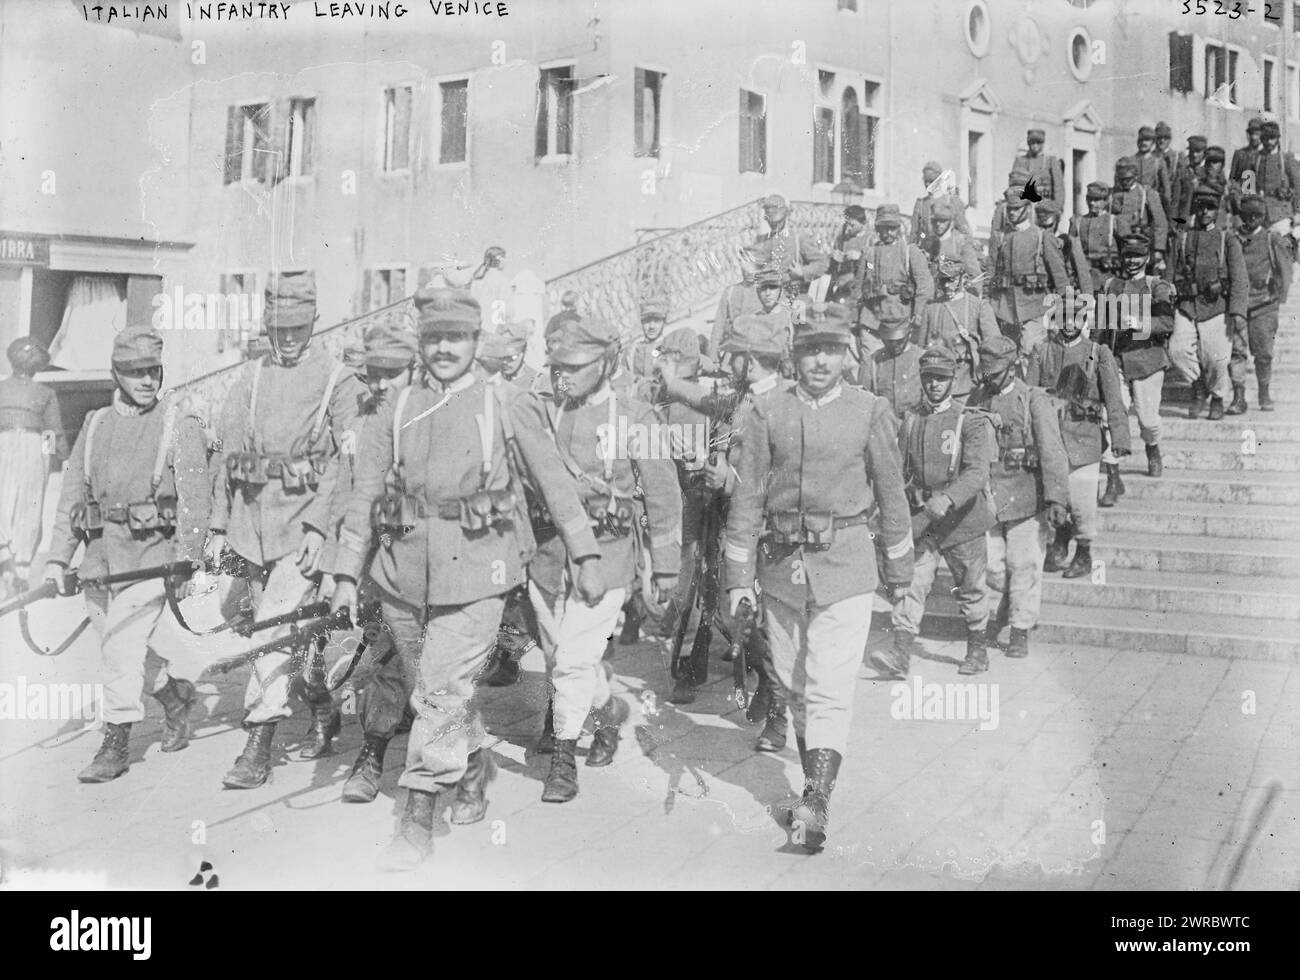 Infanterie italienne quittant Venise, la photographie montre des soldats italiens à Venise pendant la première Guerre mondiale, entre 1914 et CA. 1915, Guerre mondiale, 1914-1918, négatifs en verre, 1 négatif : verre Banque D'Images